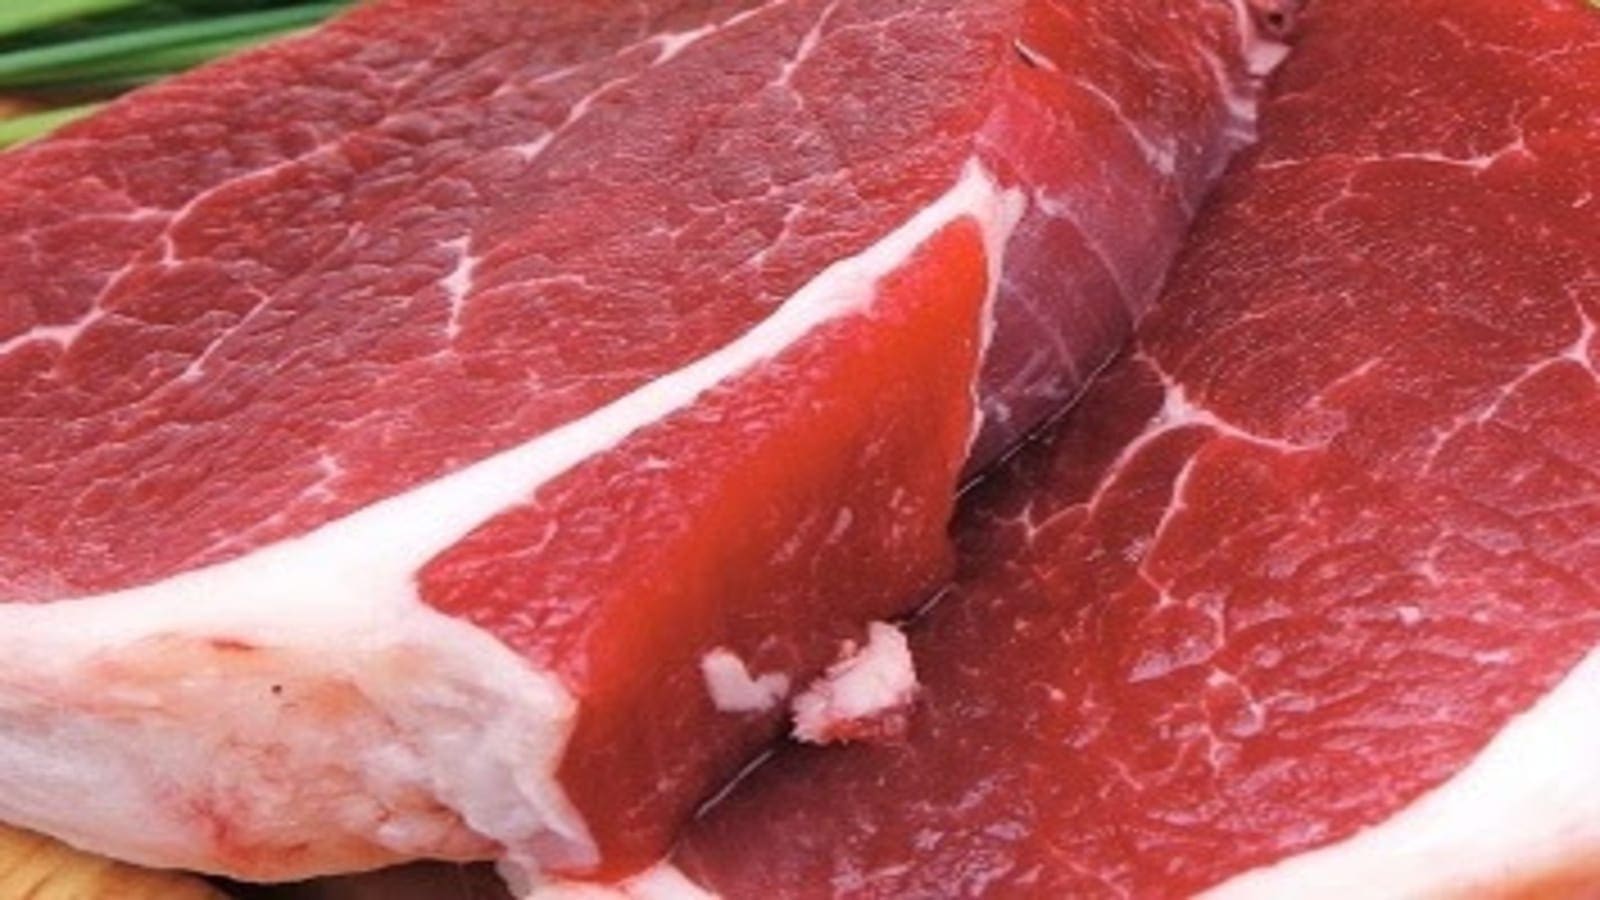 Pork sales thrive in Uganda amid ARV contamination concerns